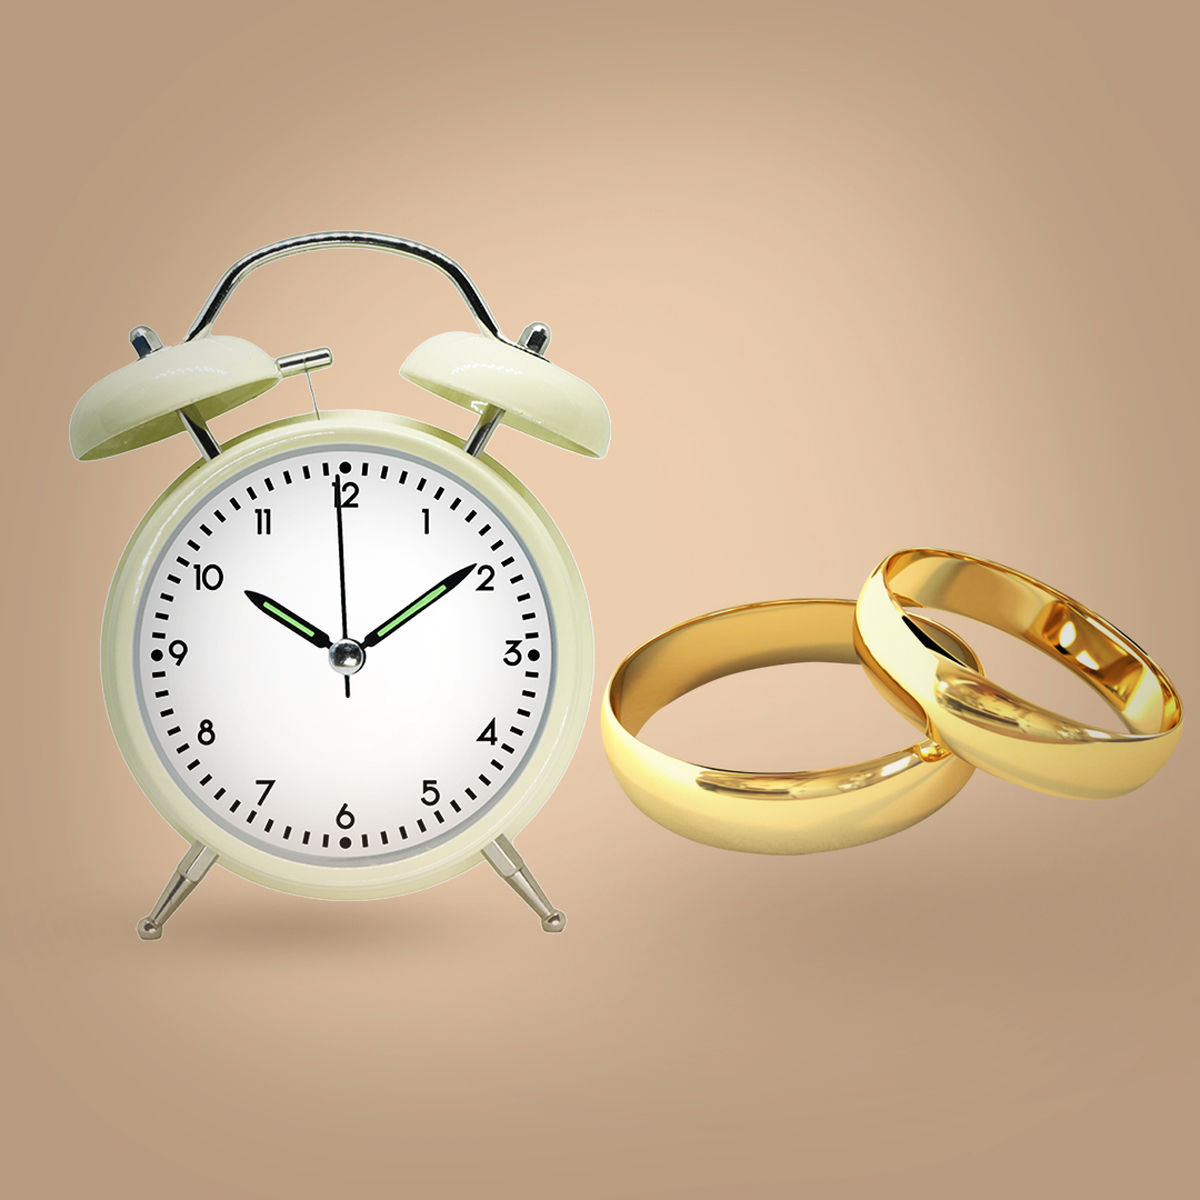 وانین ارث و نفقه در ازدواج موقت چیست؟